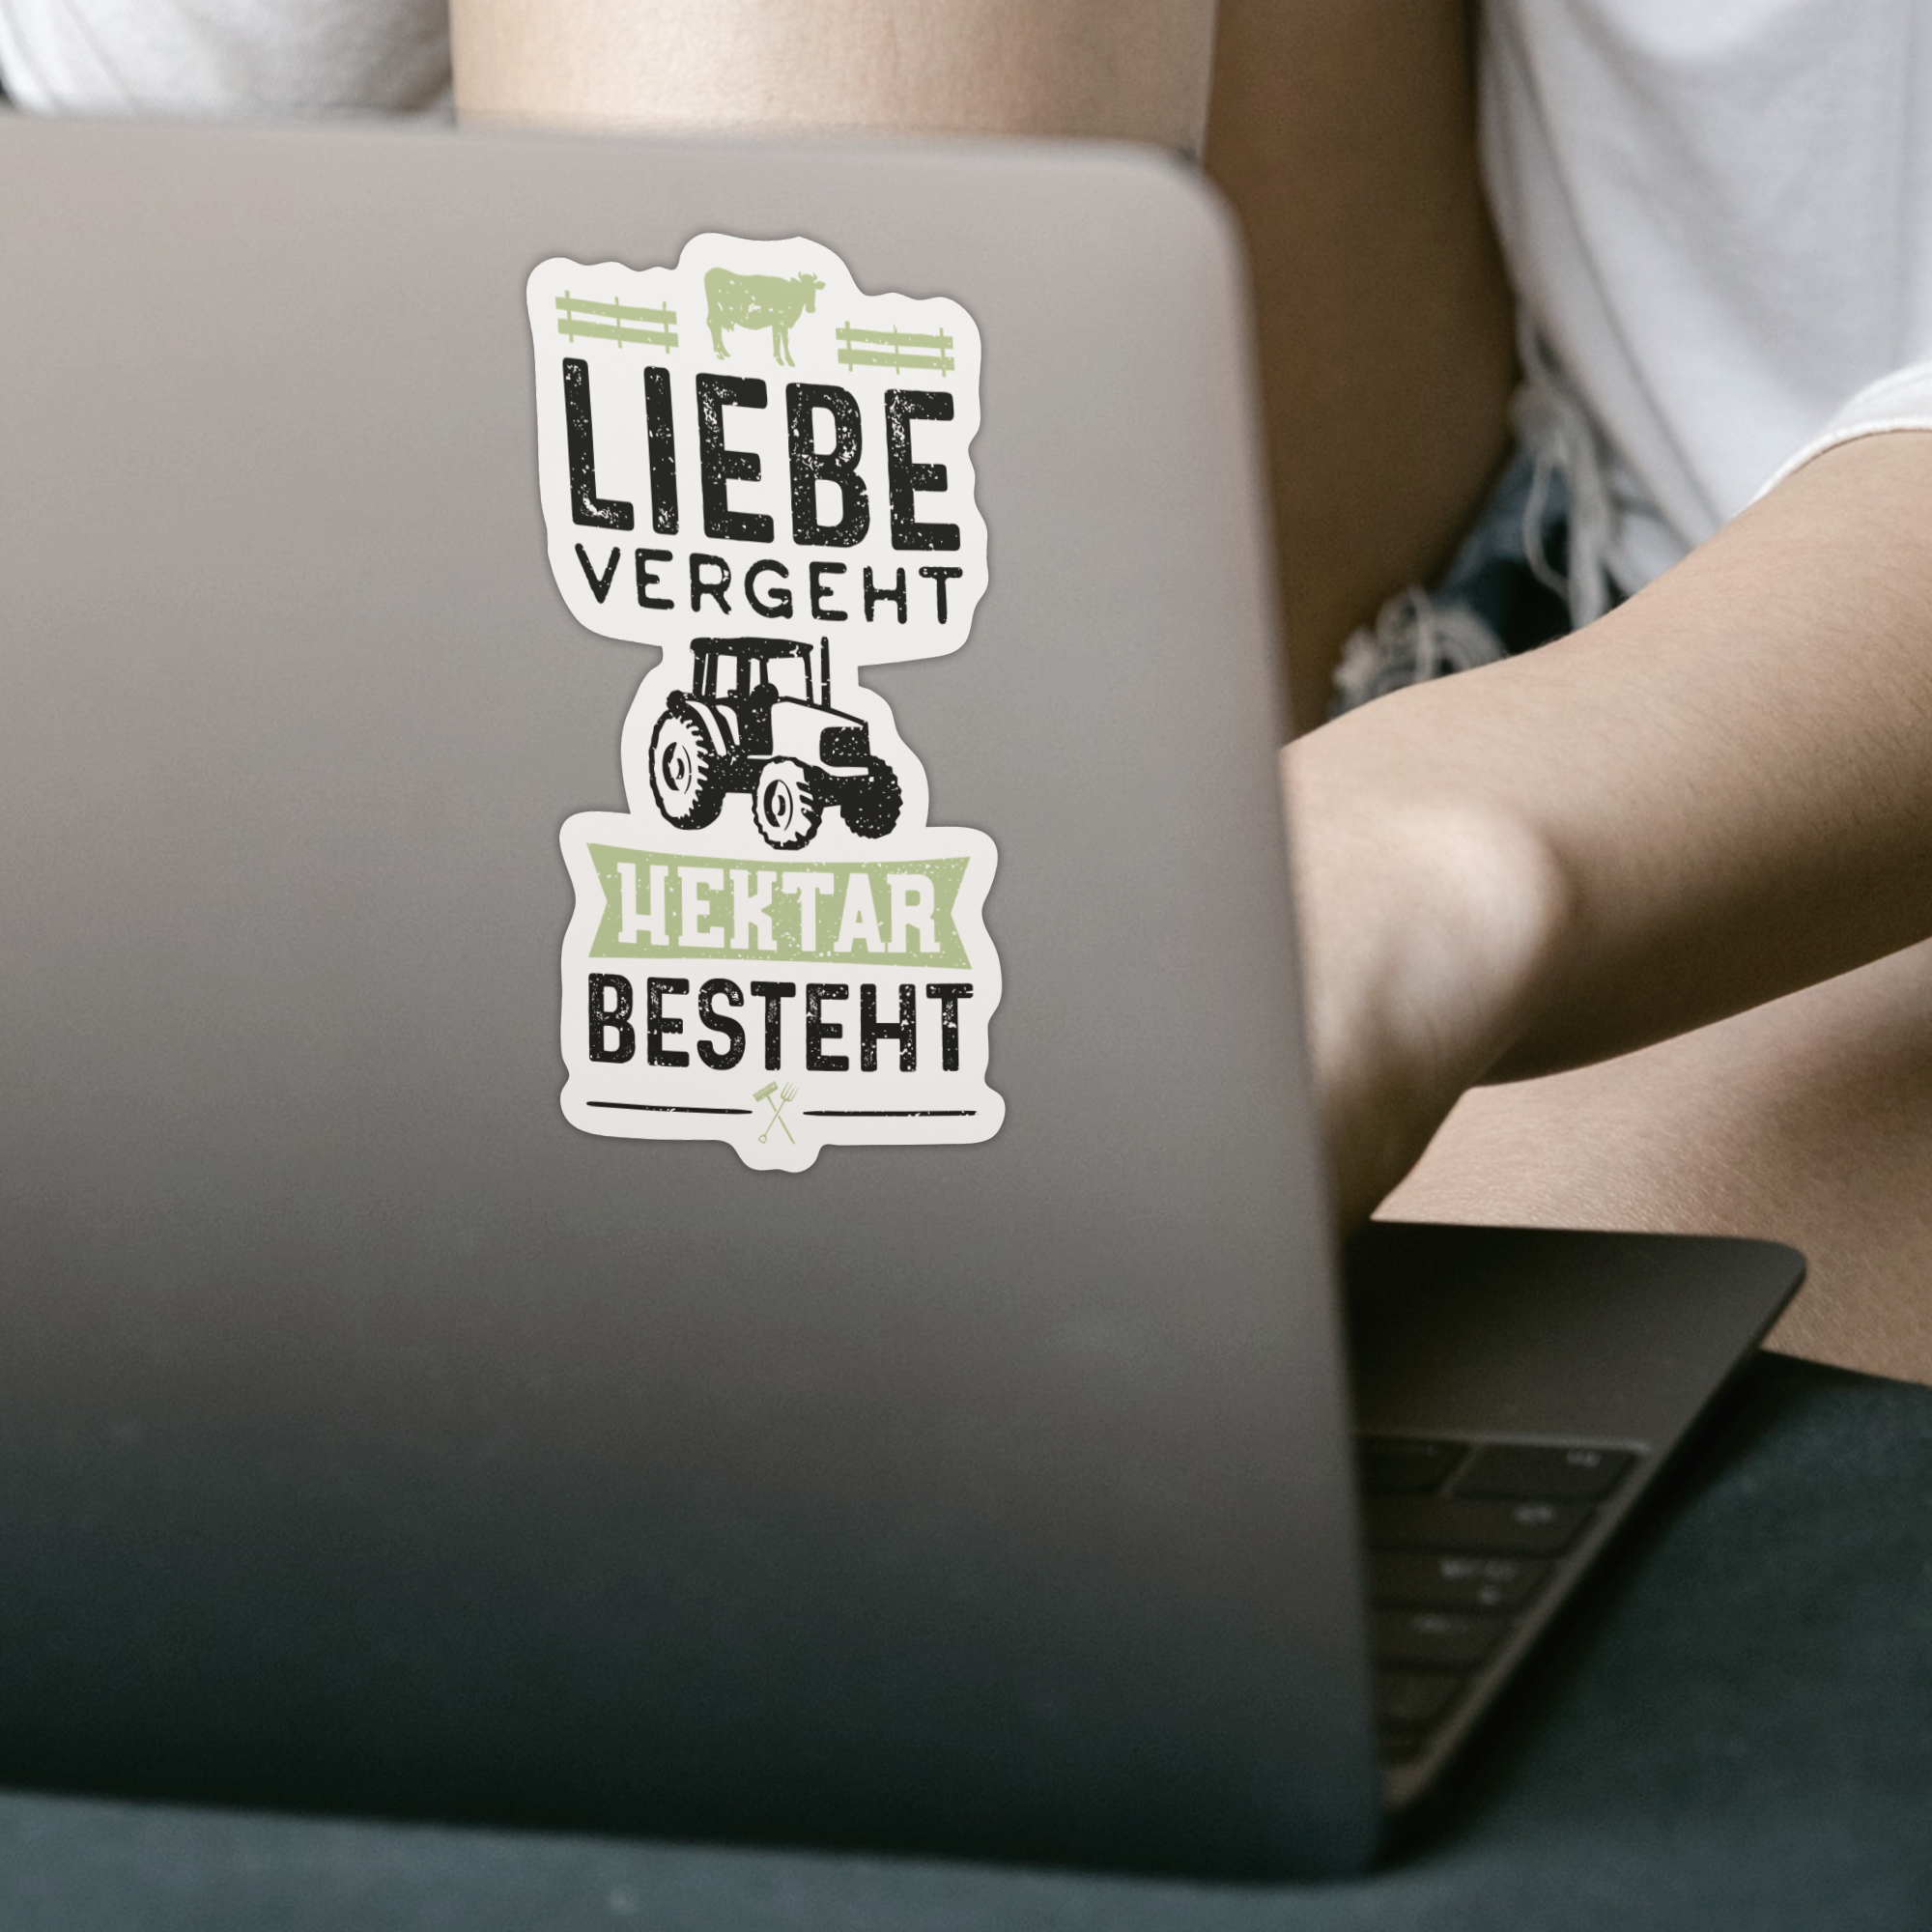 Liebe Vergeht Hektar Besteht Sticker - DESIGNSBYJNK5.COM